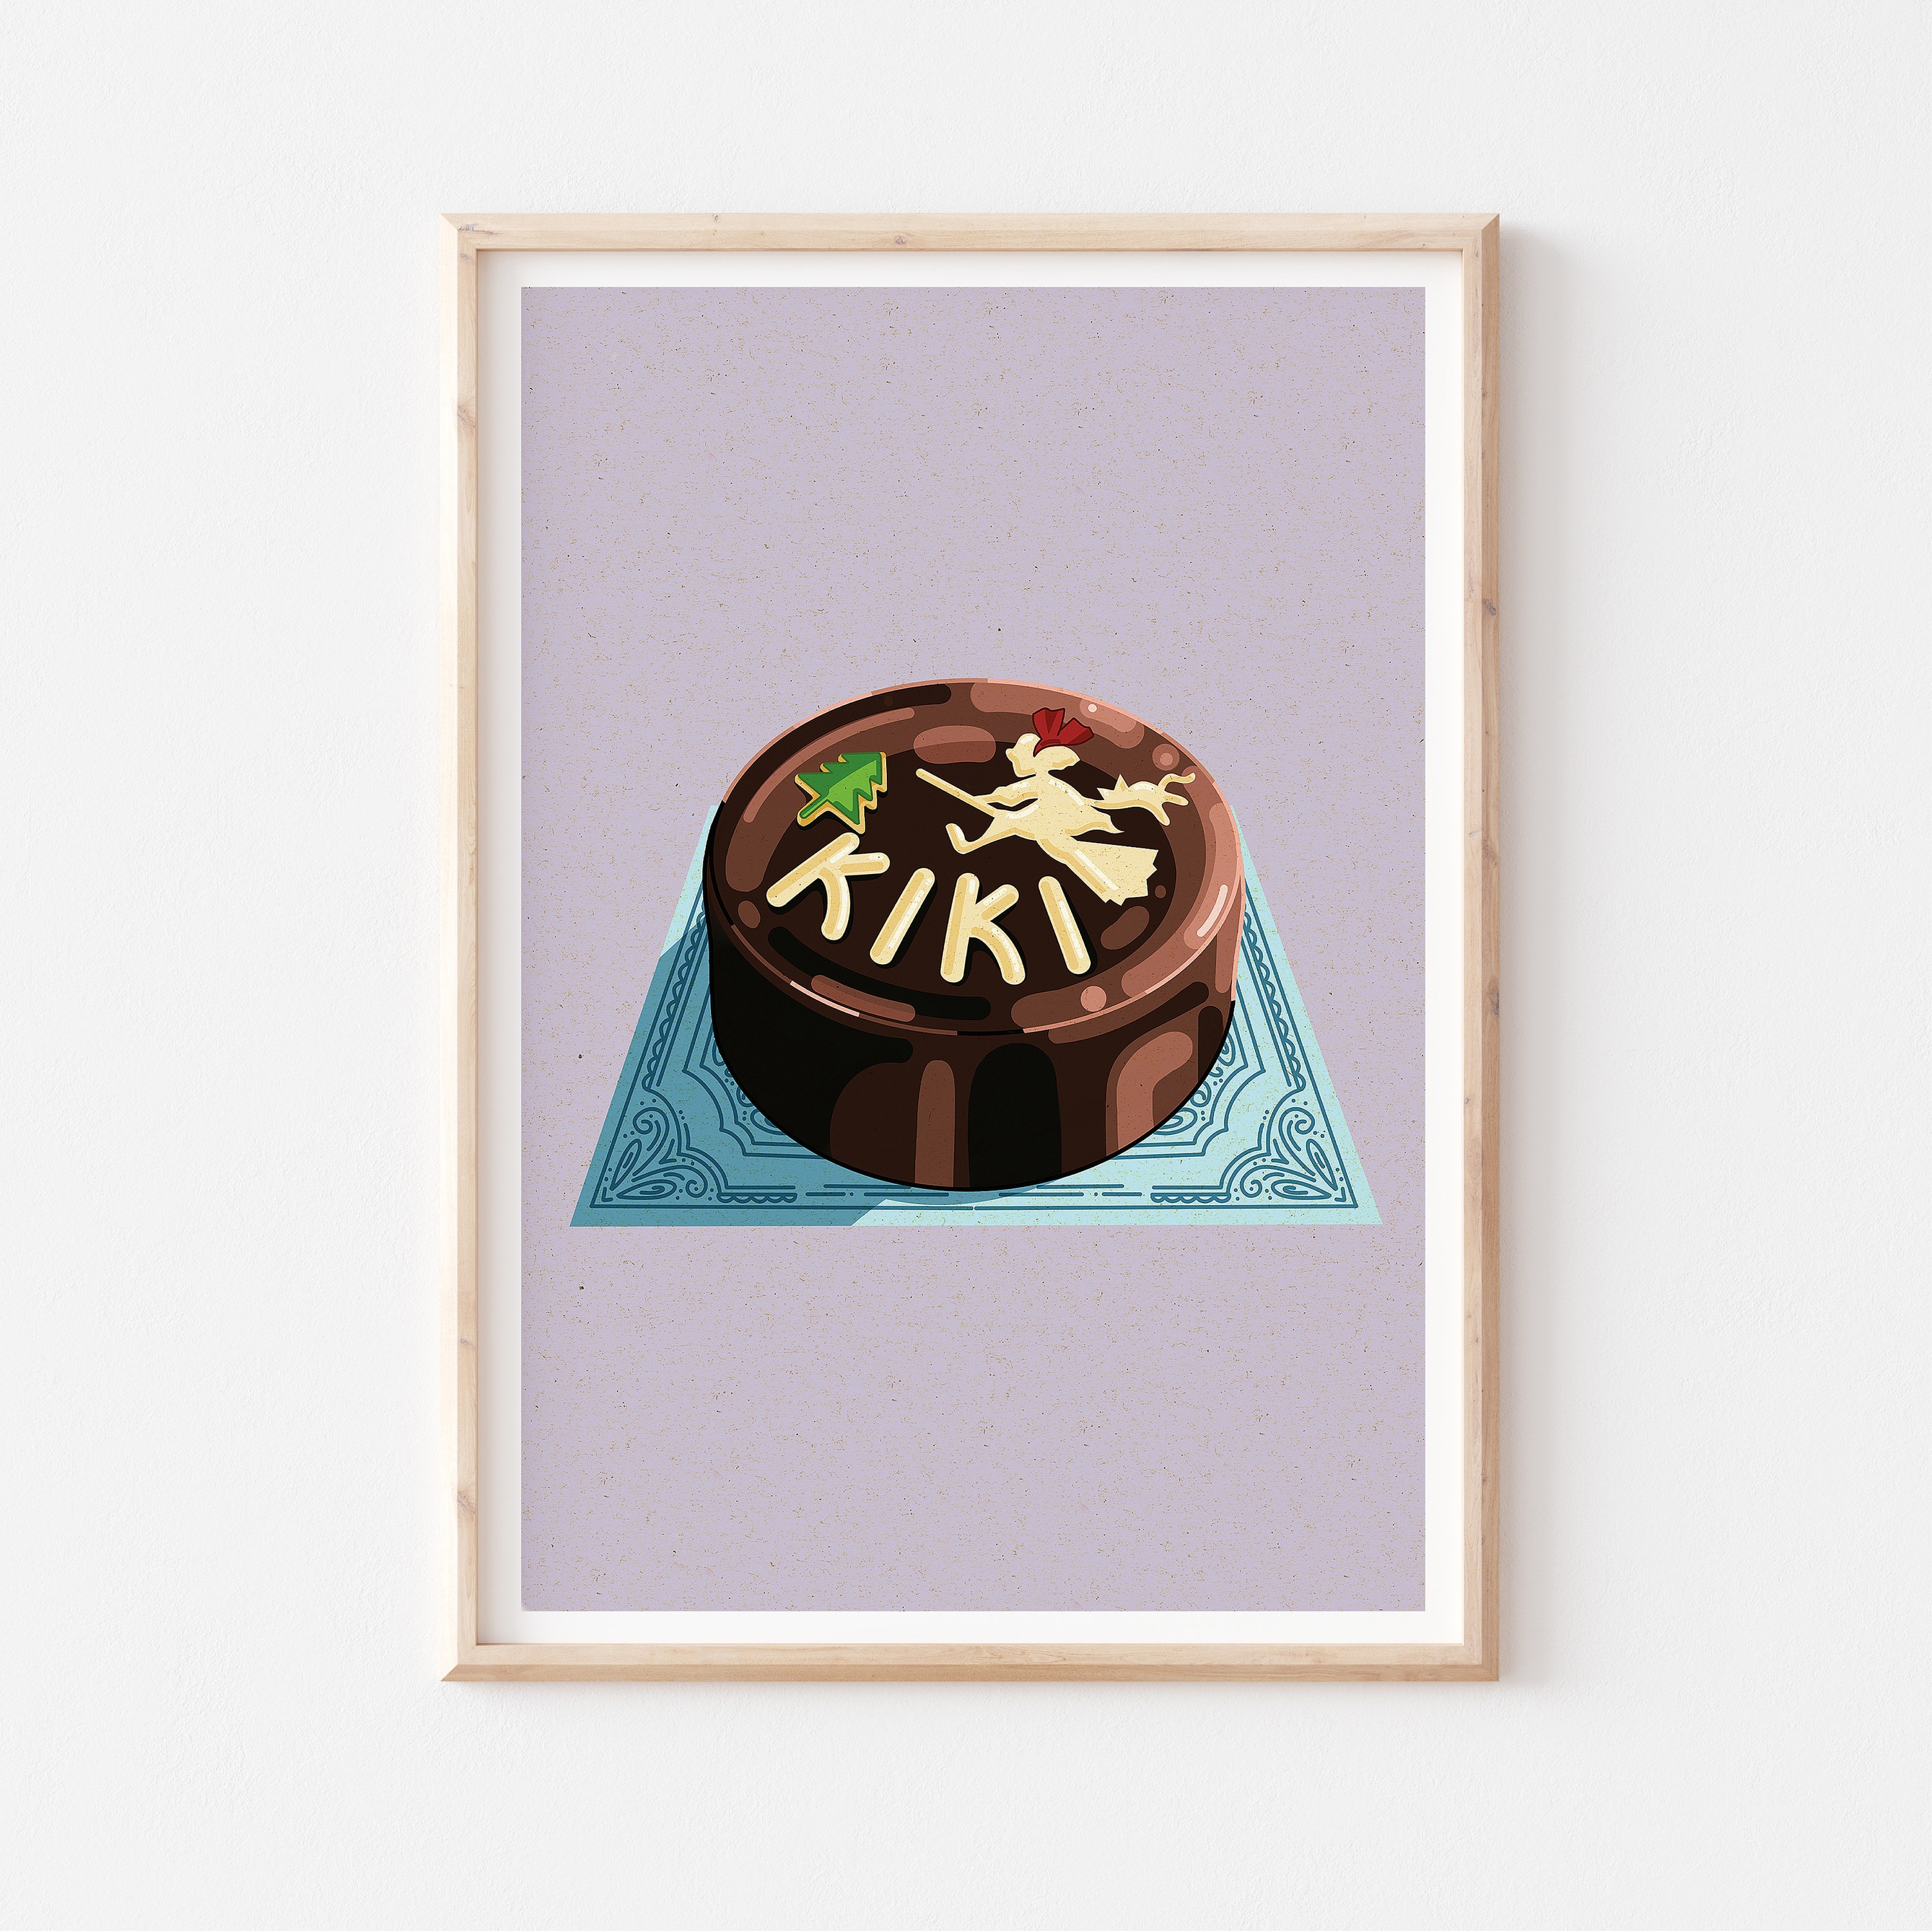 Kikis Cake A5 Art Print photo picture